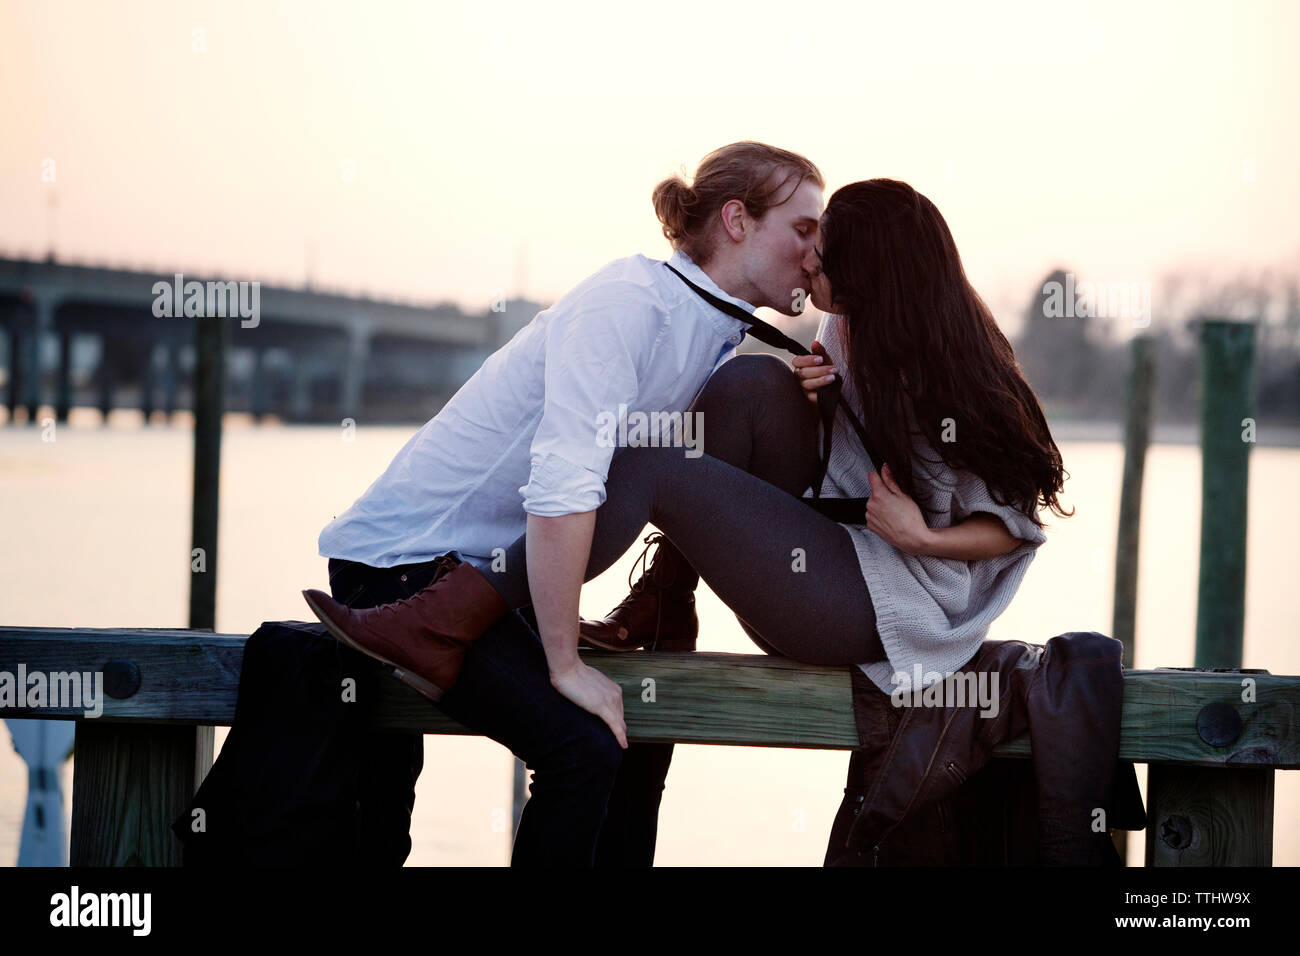 Coppia romantica baciare mentre è seduto sulla ringhiera contro sky Foto Stock